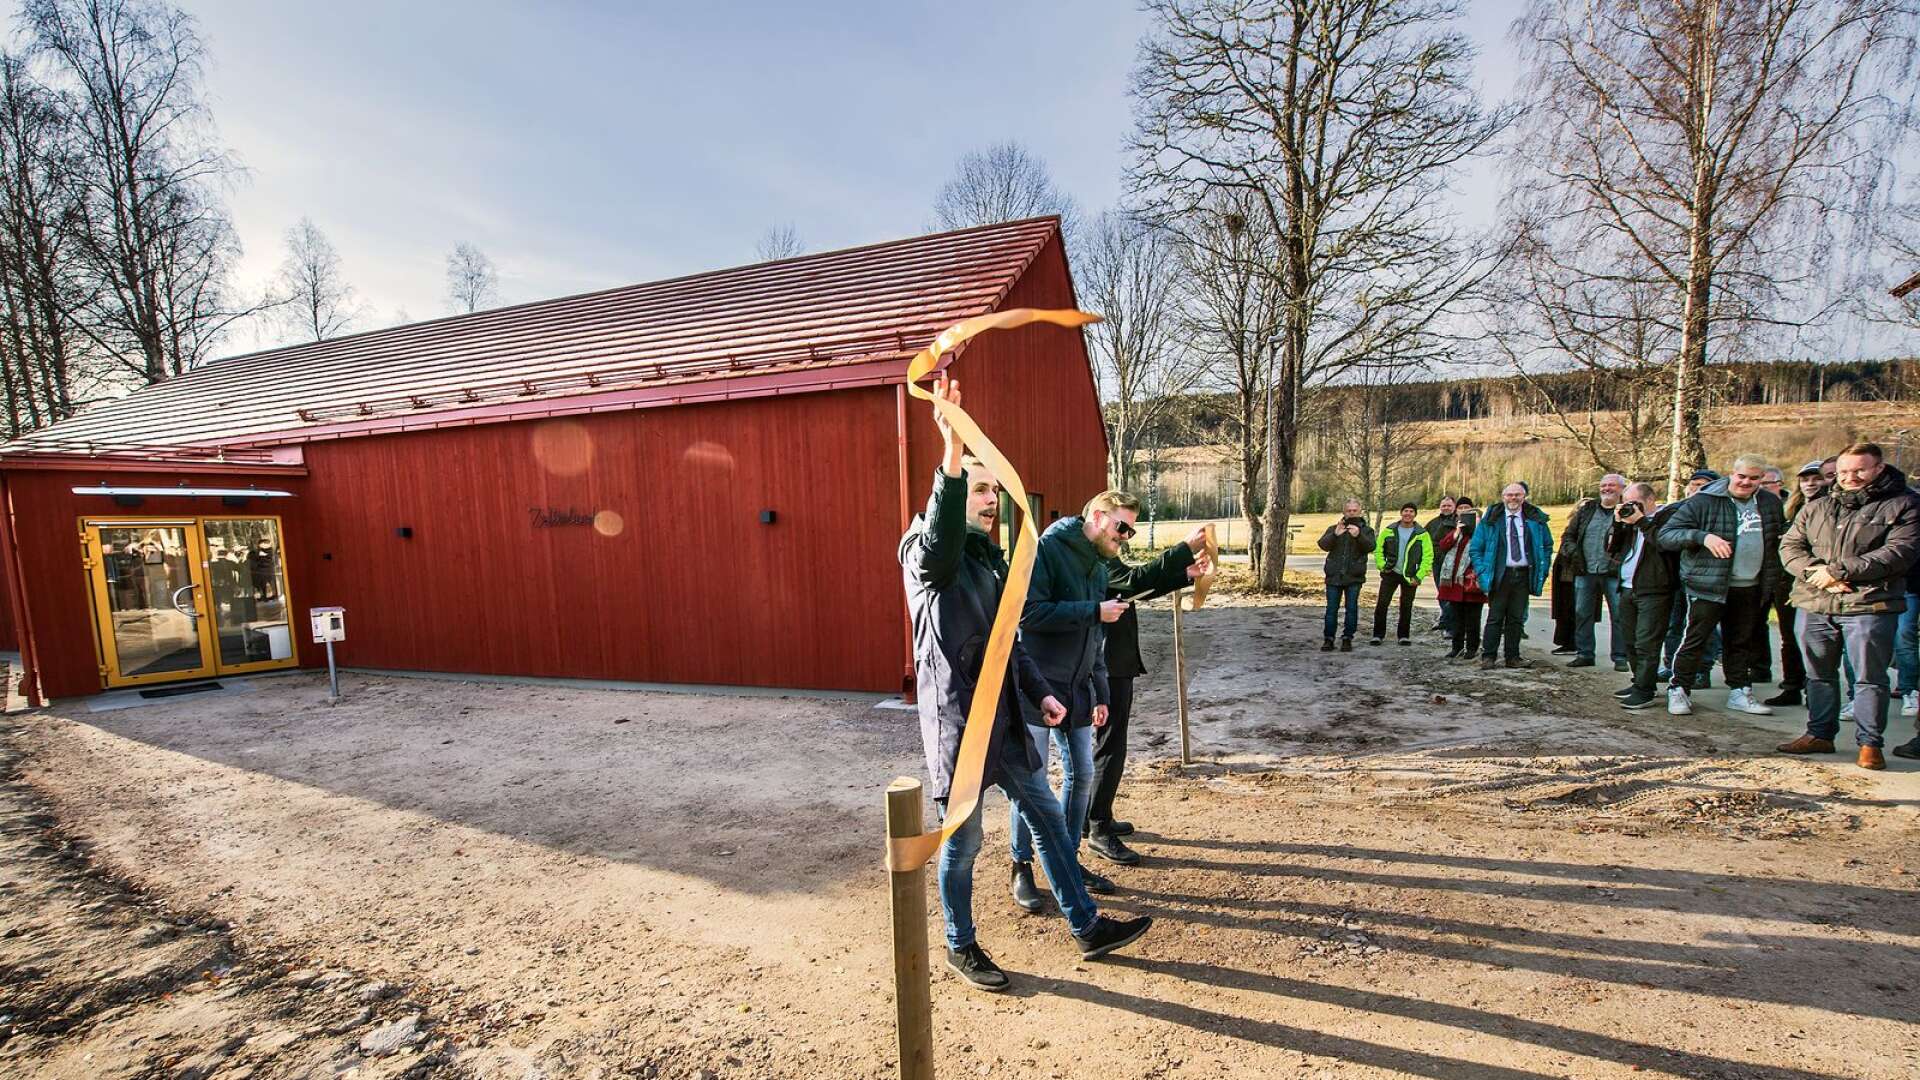 Johan Östling, Oscar Magnusson och Björn A Ling svarade för både musik och bandklippning när Geijerskolan invigde sitt nya musikhus ”Zetterlund” på tisdagen.